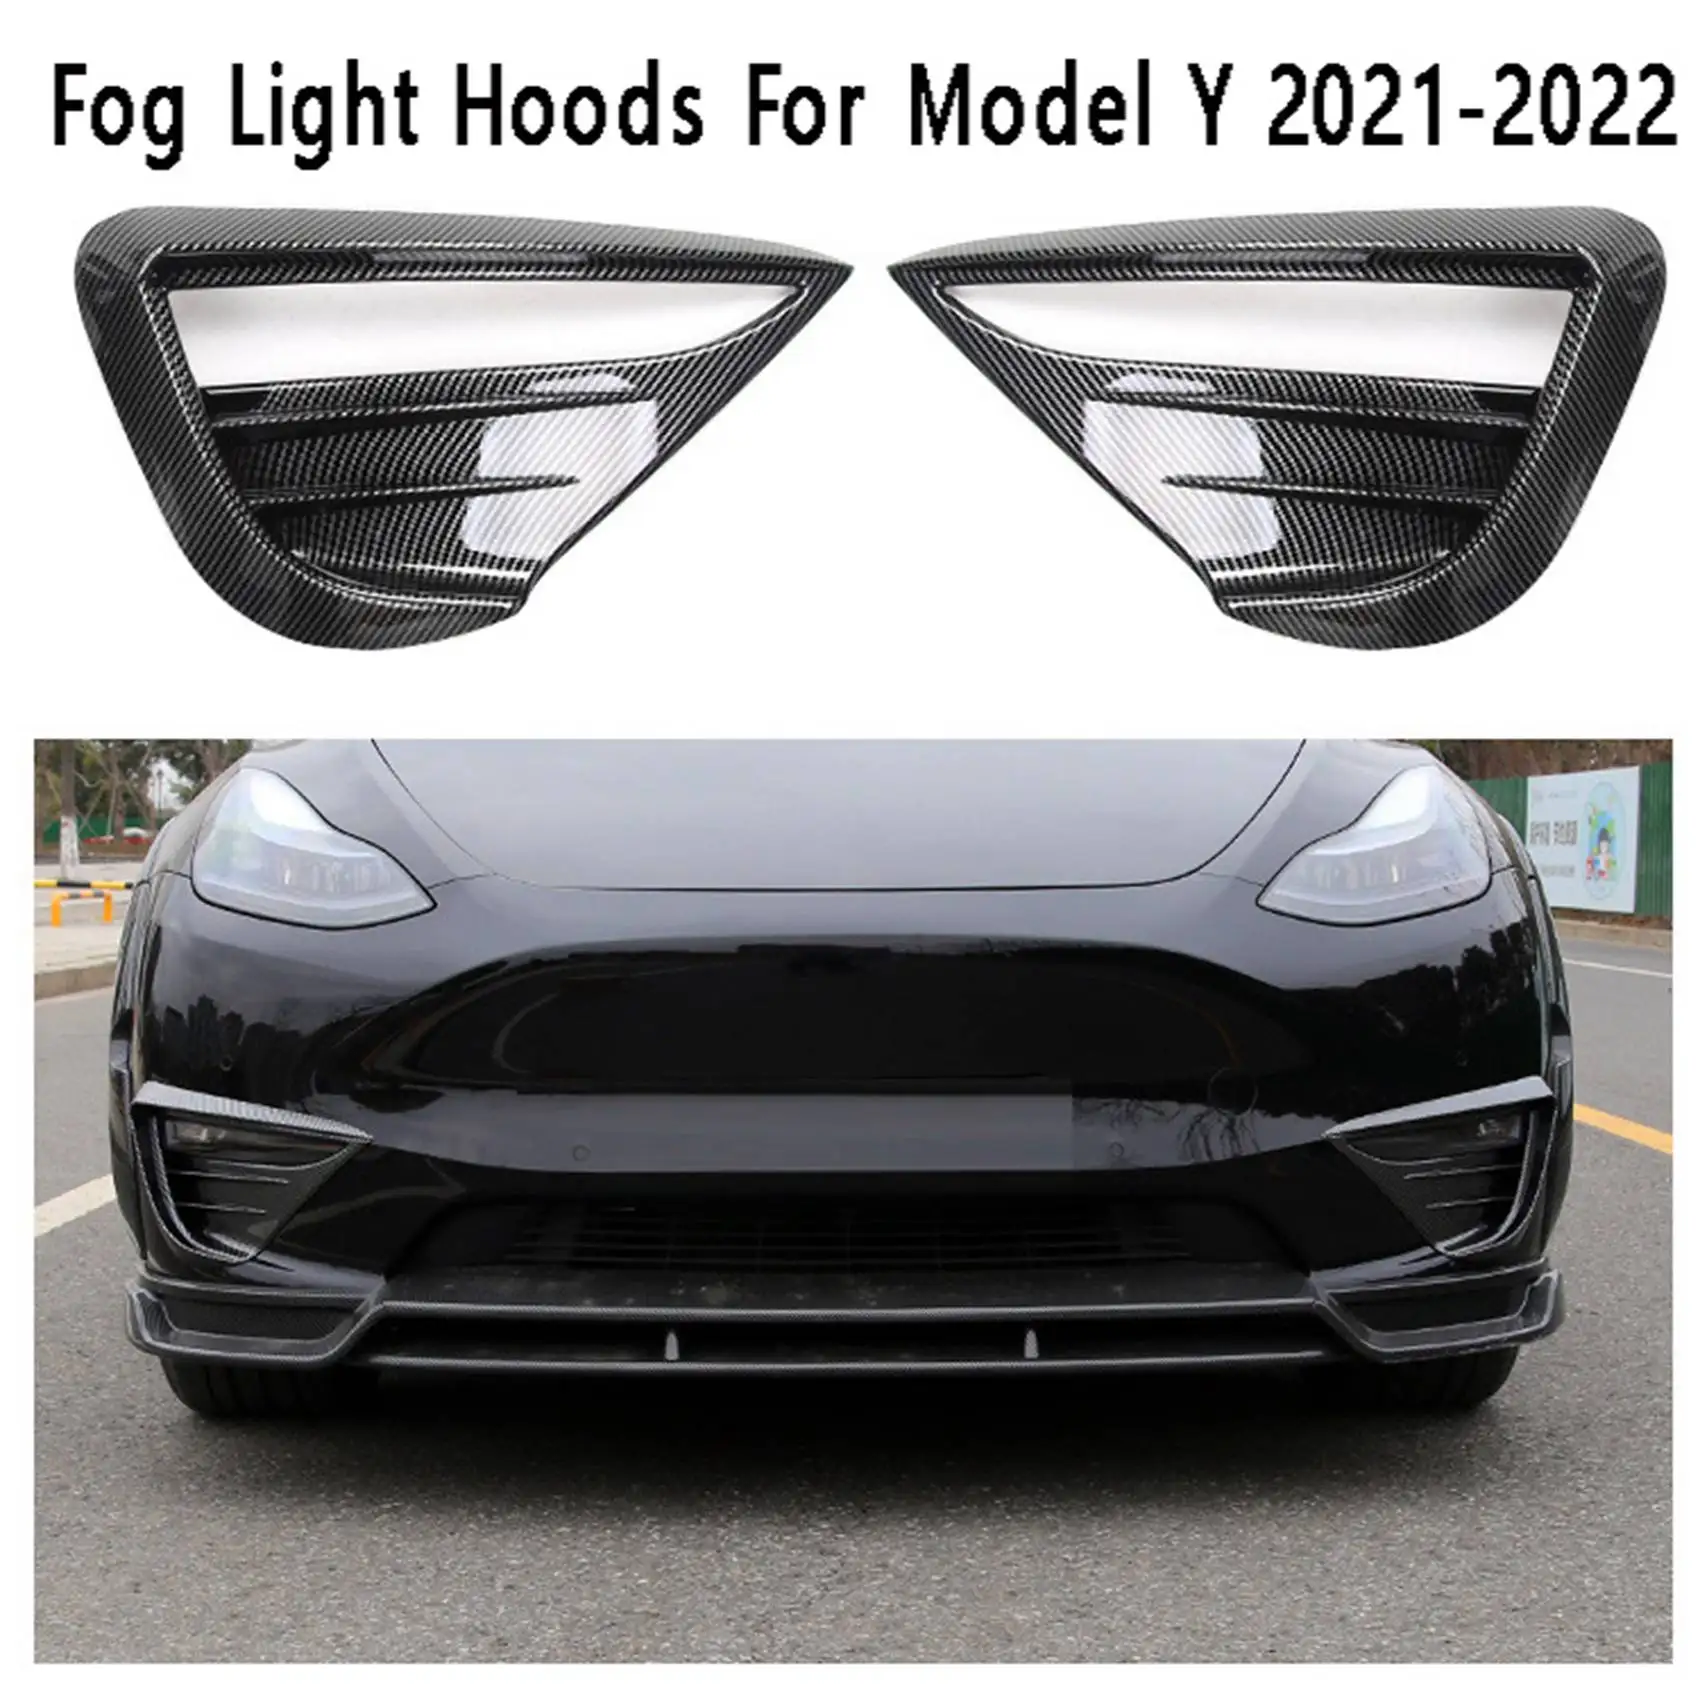 

Car Fog Light Hoods Eyebrow Eye Wind Knife Cover Fog Lamp Cover Spoiler for Tesla Model Y 2021-2022 Bright Carbon Fiber